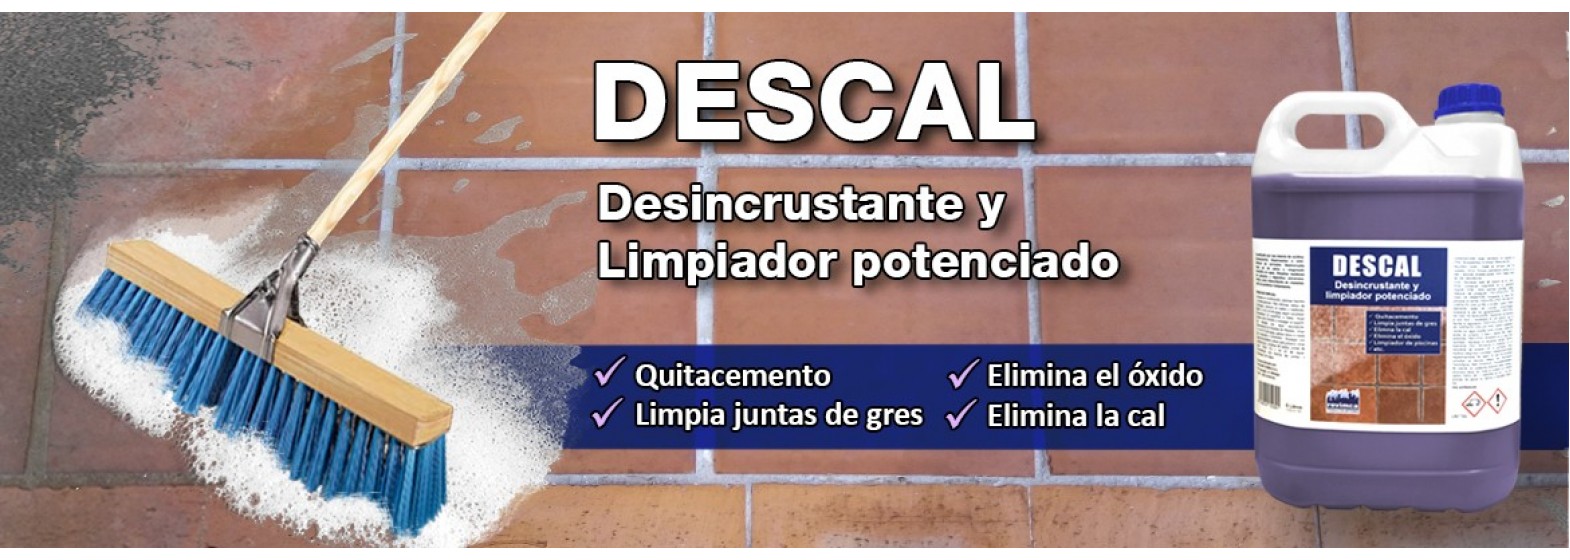 Descal